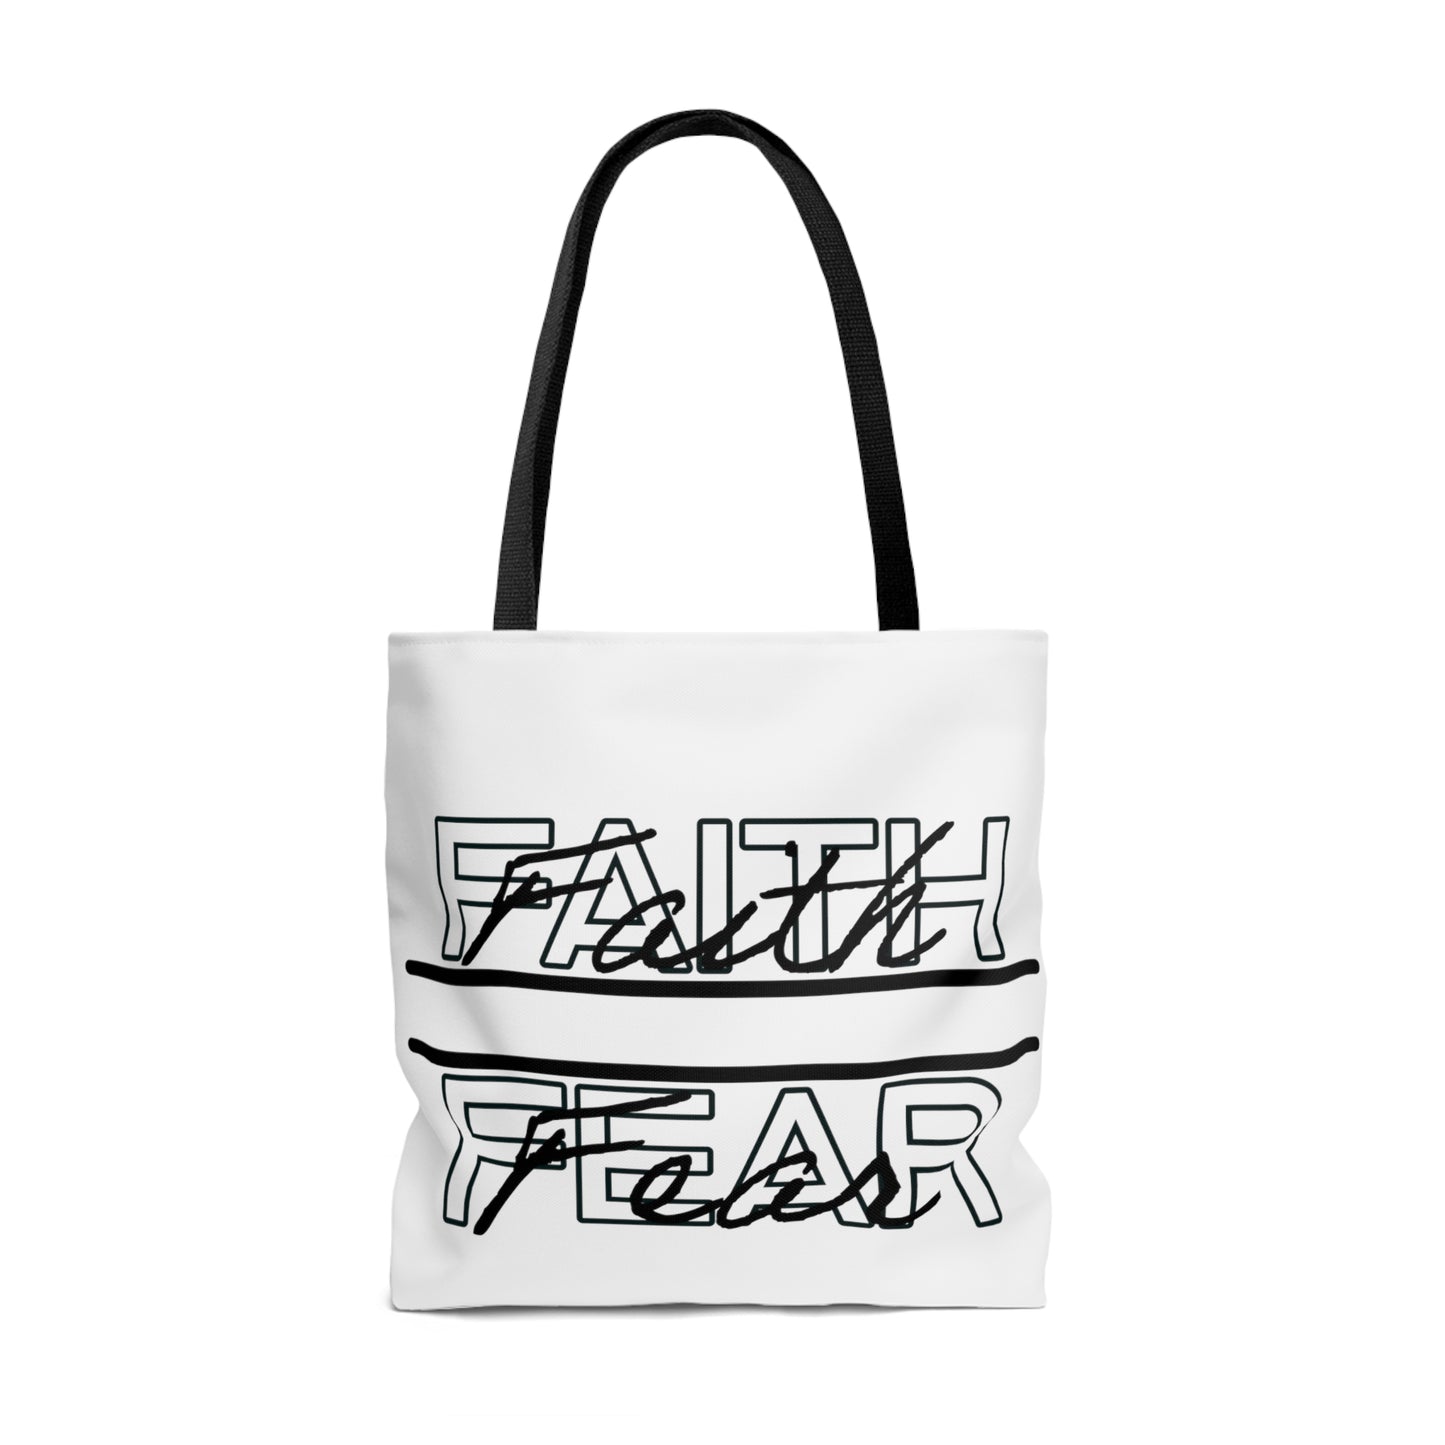 Faith Over Fear Tote Bag, Trendy Christian, Faith Tote Bag